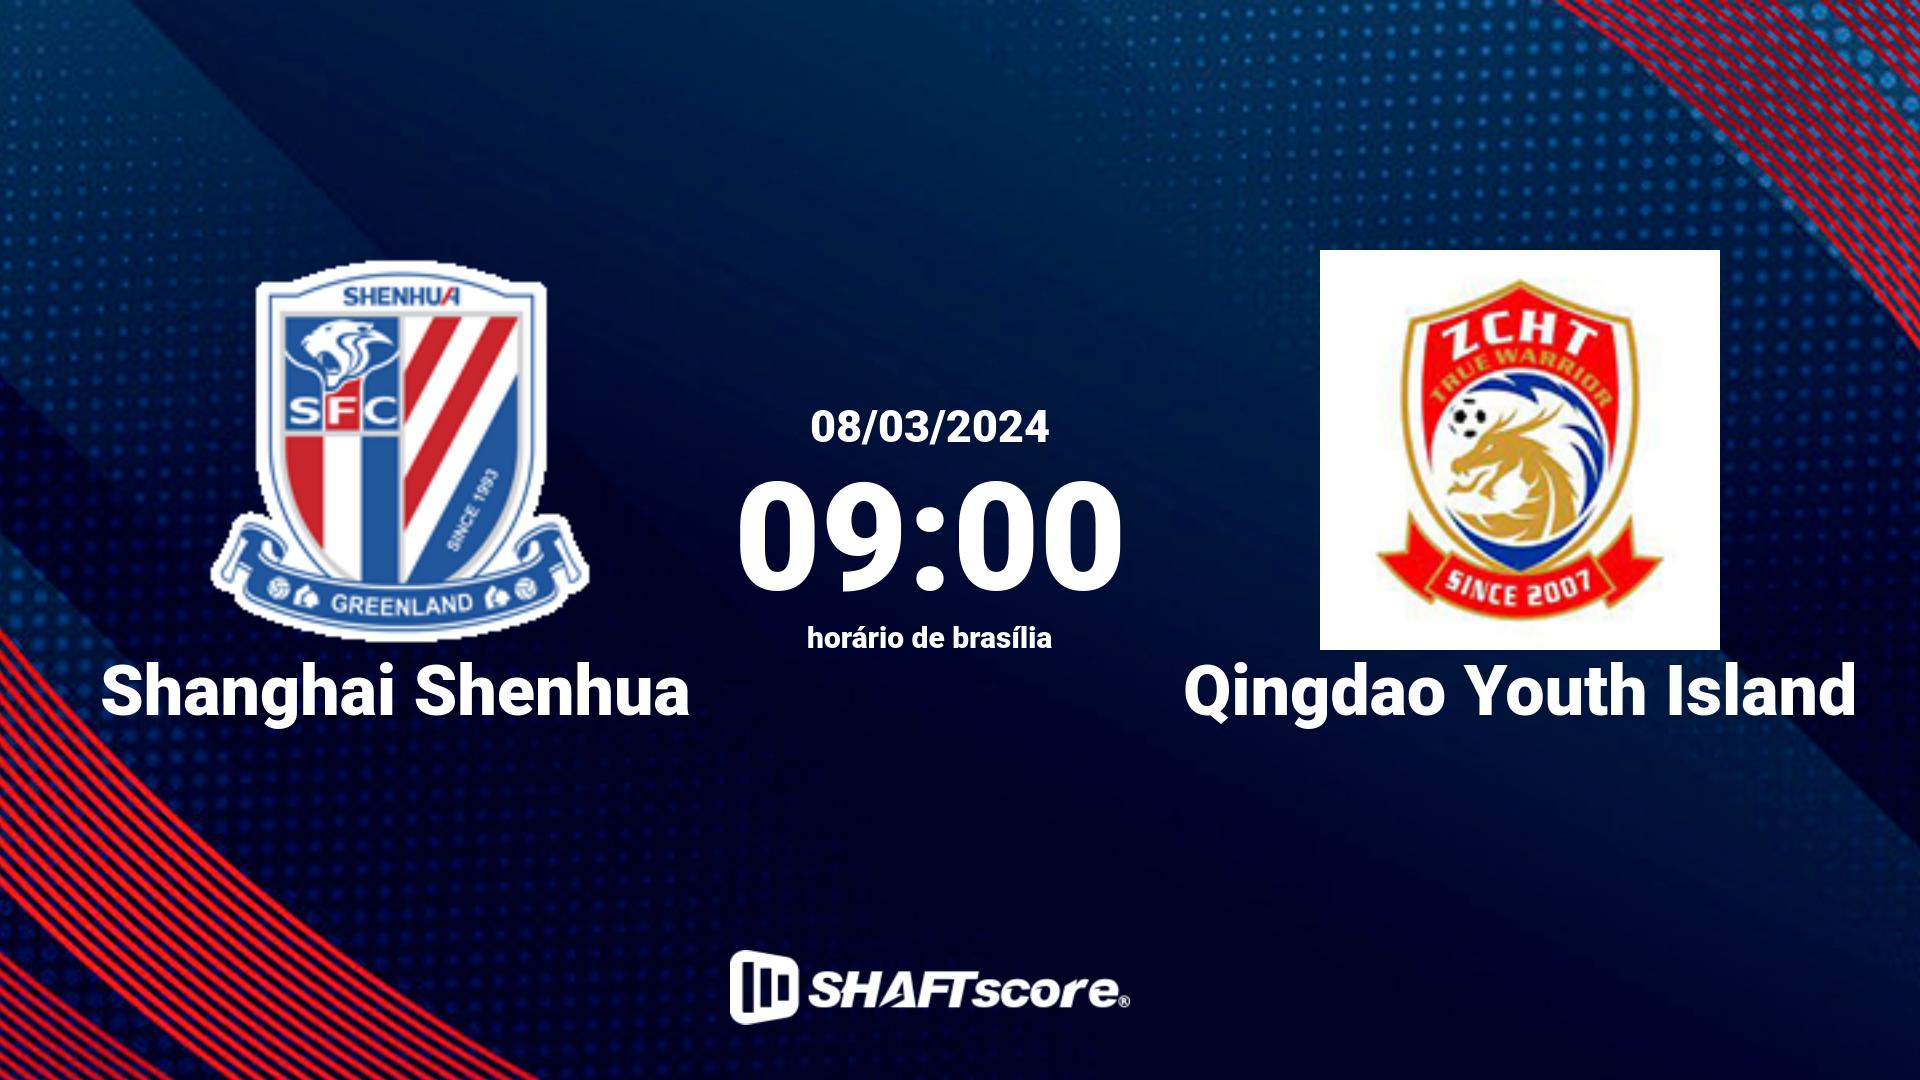 Estatísticas do jogo Shanghai Shenhua vs Qingdao Youth Island 08.03 09:00